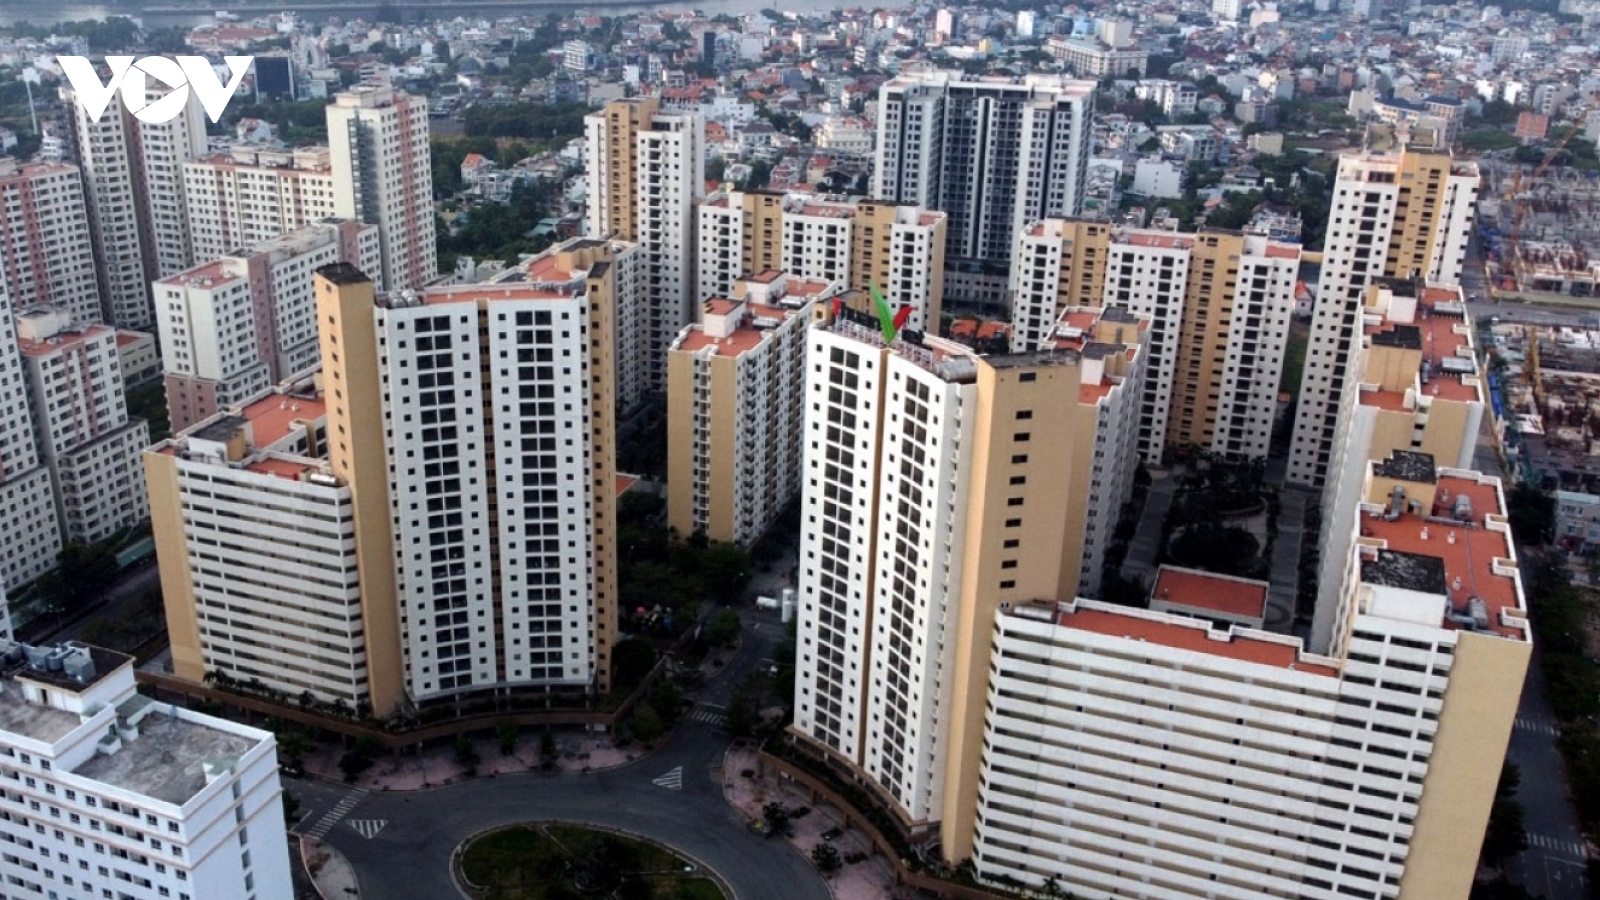 Thiếu hụt nguồn cung, giá căn hộ tại các thành phố lớn tăng liên tục